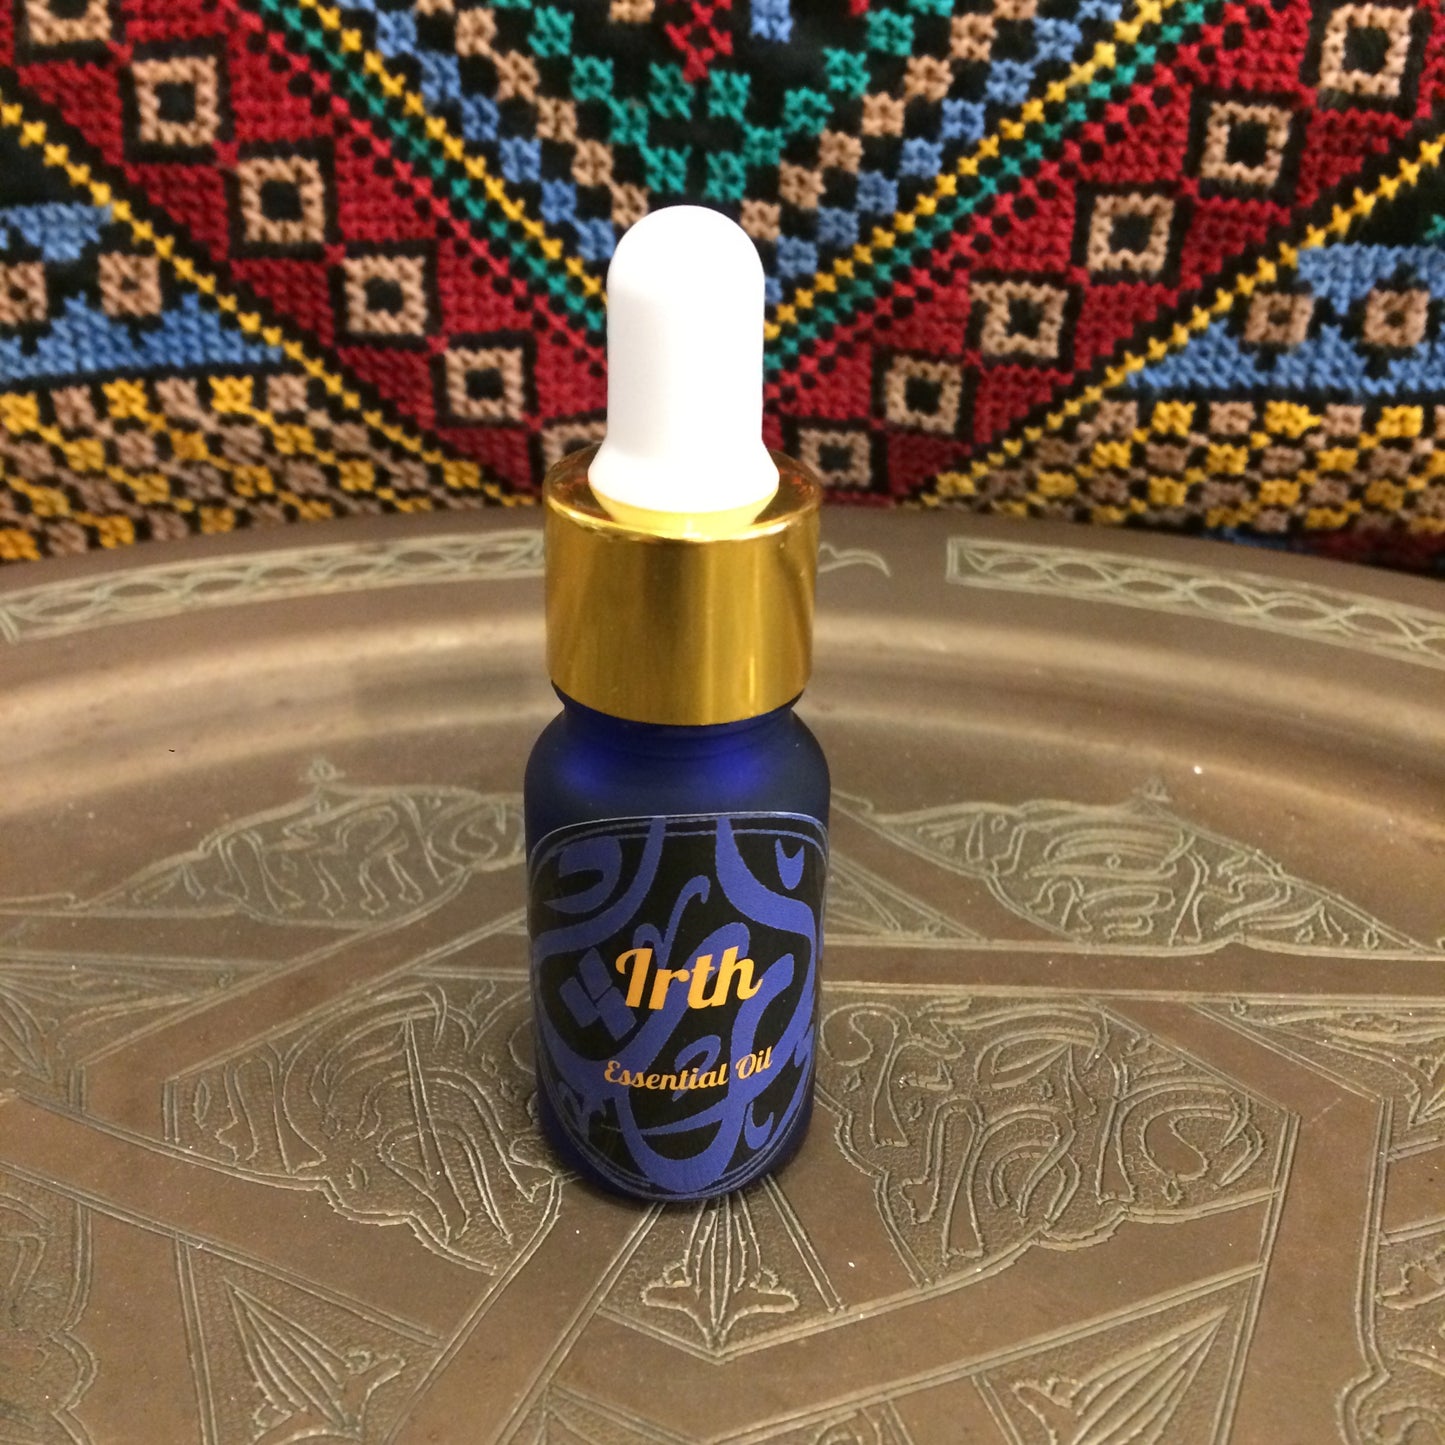 Irth Pure Organic Essential Oil